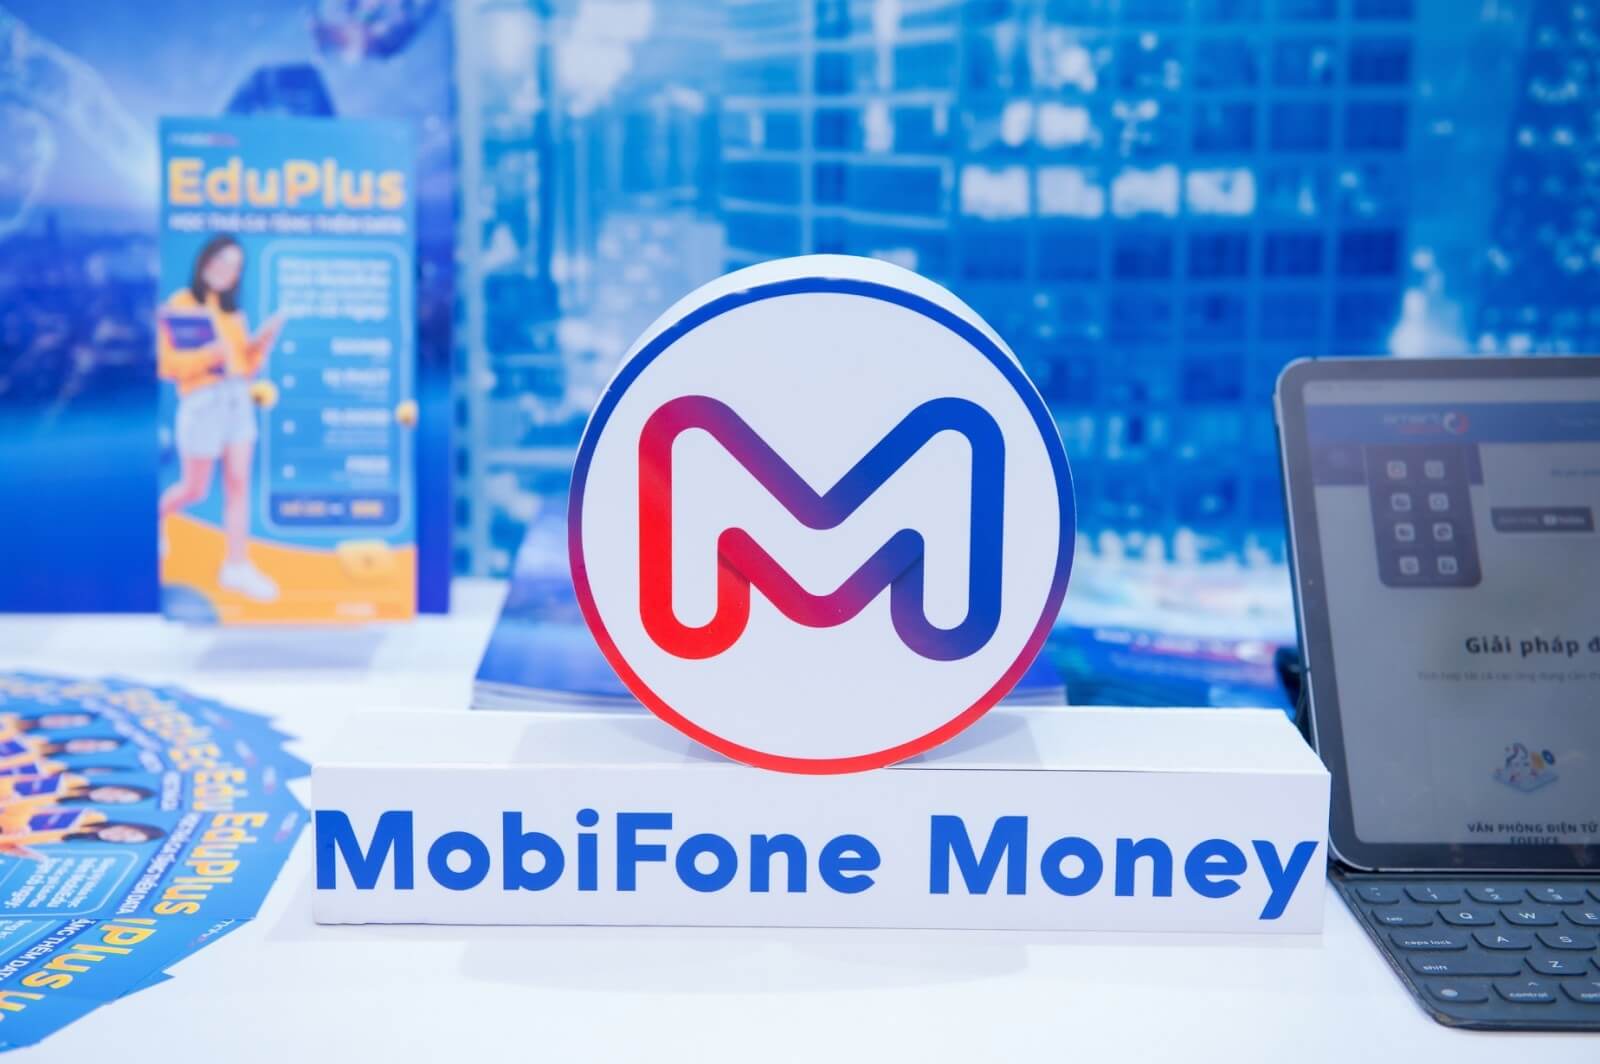 Điều khoản và điều kiện sử dụng ứng dụng MobiFone Money